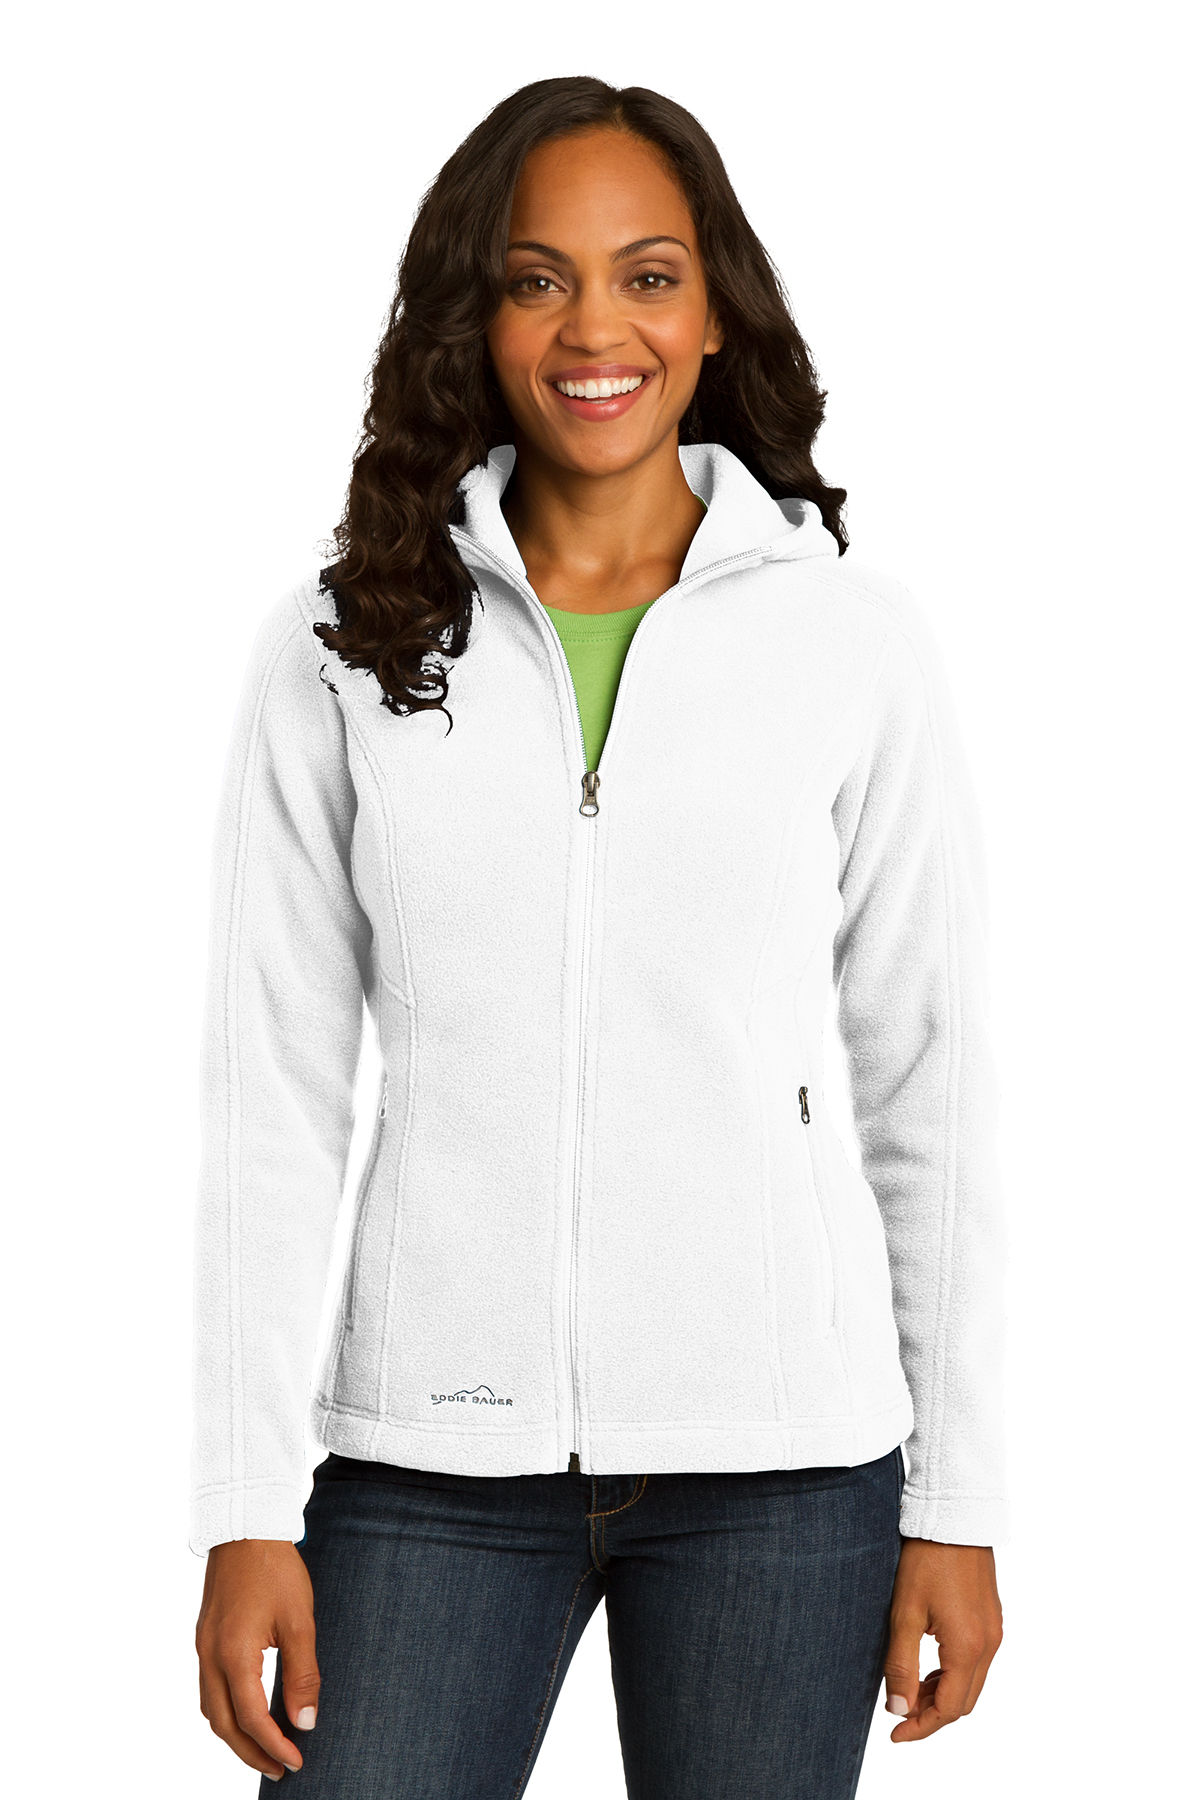 Eddie Bauer Ladies Hooded Full-Zip Fleece Jacket | Product | SanMar